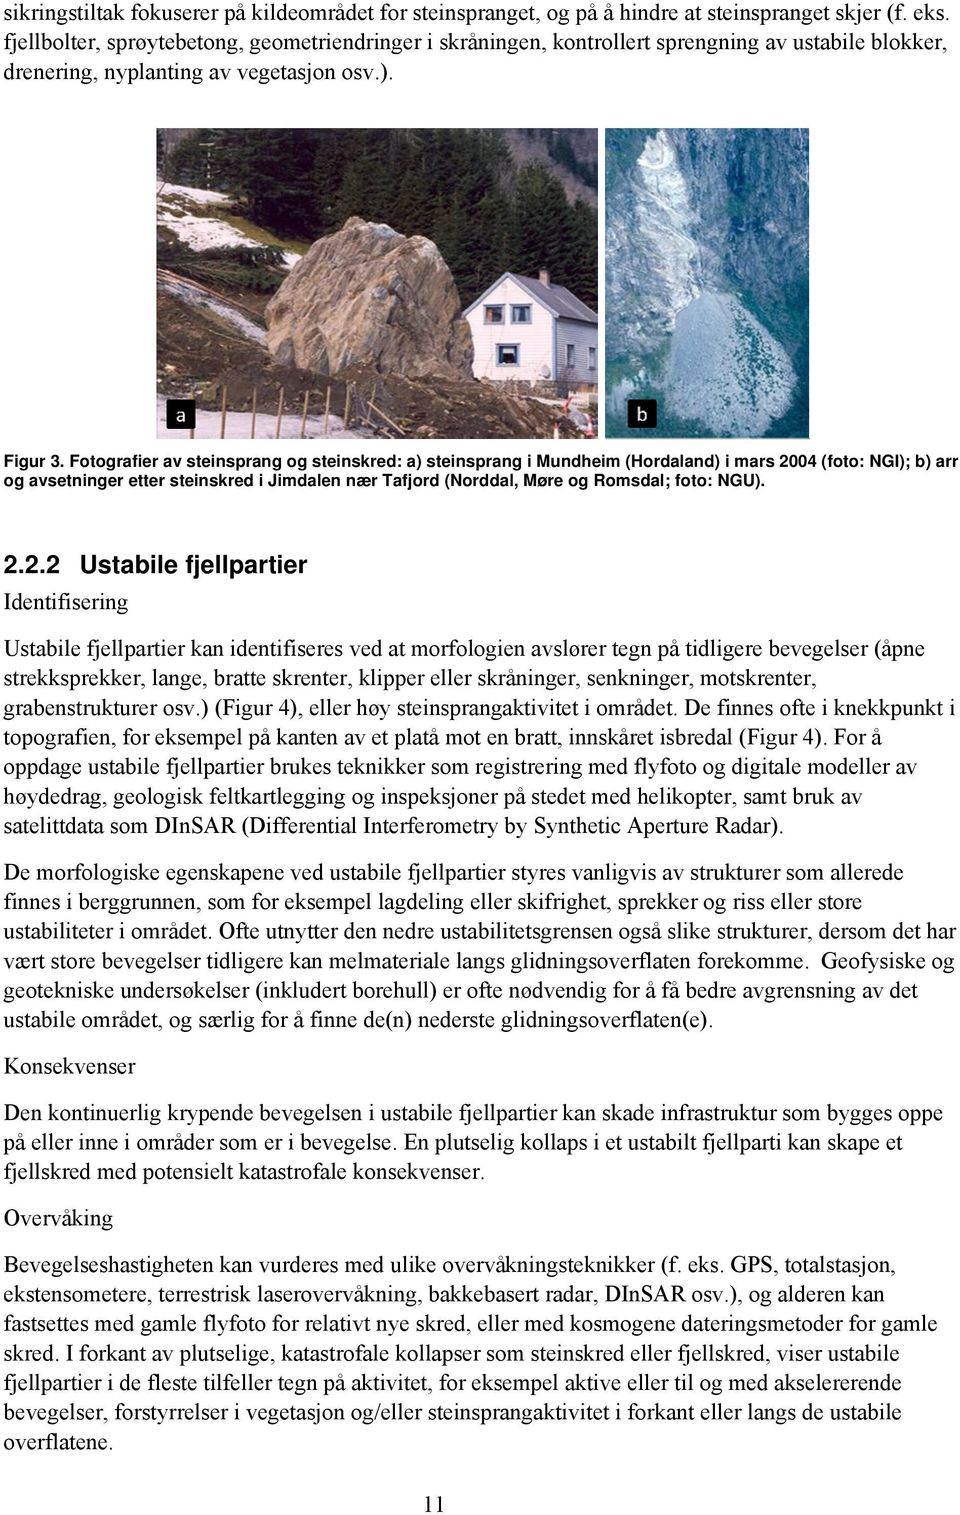 Fotografier av steinsprang og steinskred: a) steinsprang i Mundheim (Hordaland) i mars 2004 (foto: NGI); b) arr og avsetninger etter steinskred i Jimdalen nær Tafjord (Norddal, Møre og Romsdal; foto: